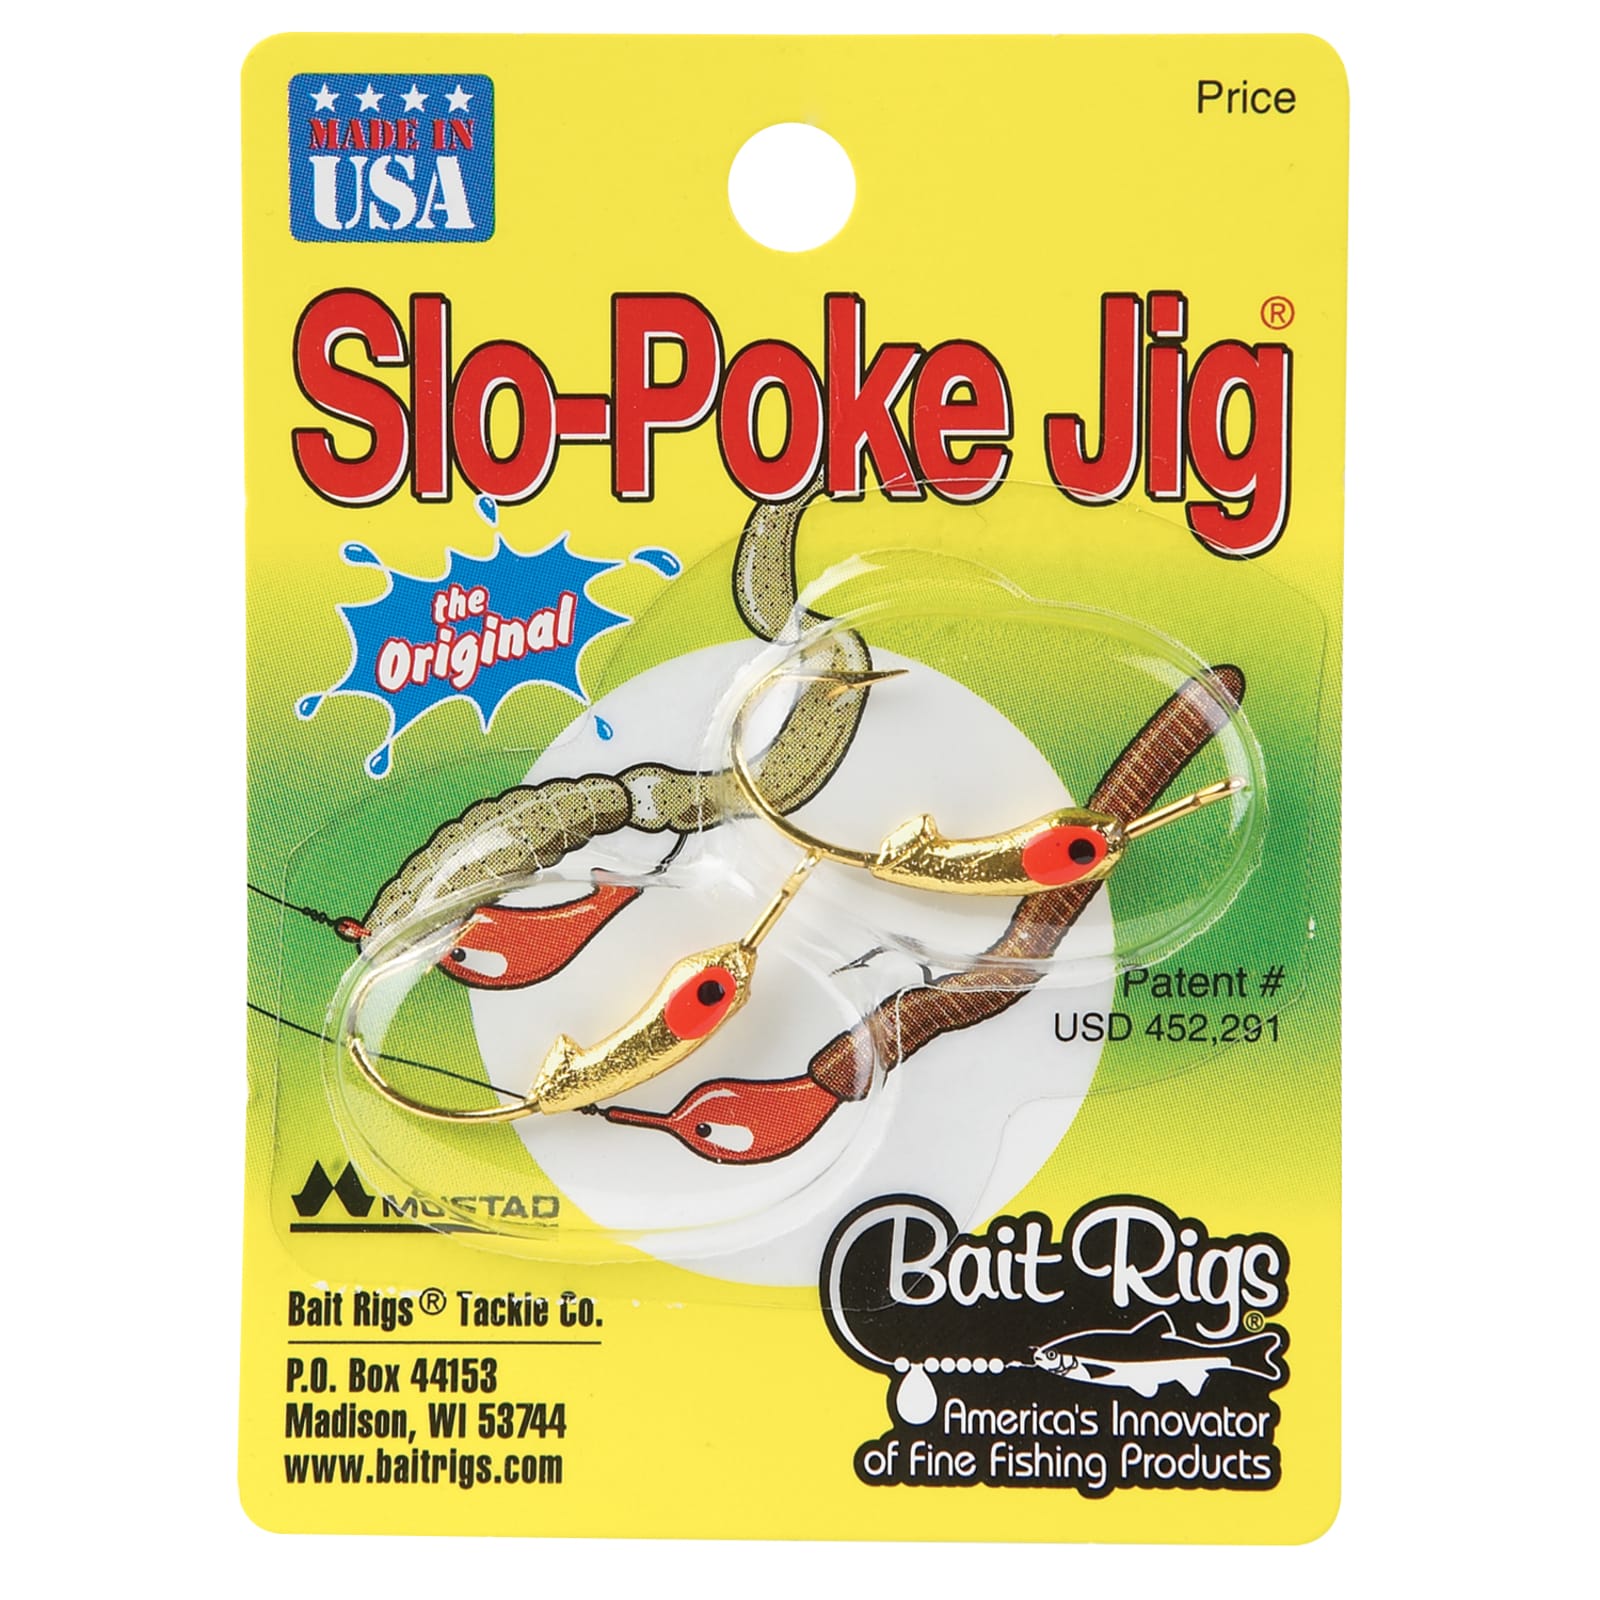 Slo-Poke Jig - Gold by Bait Rigs at Fleet Farm